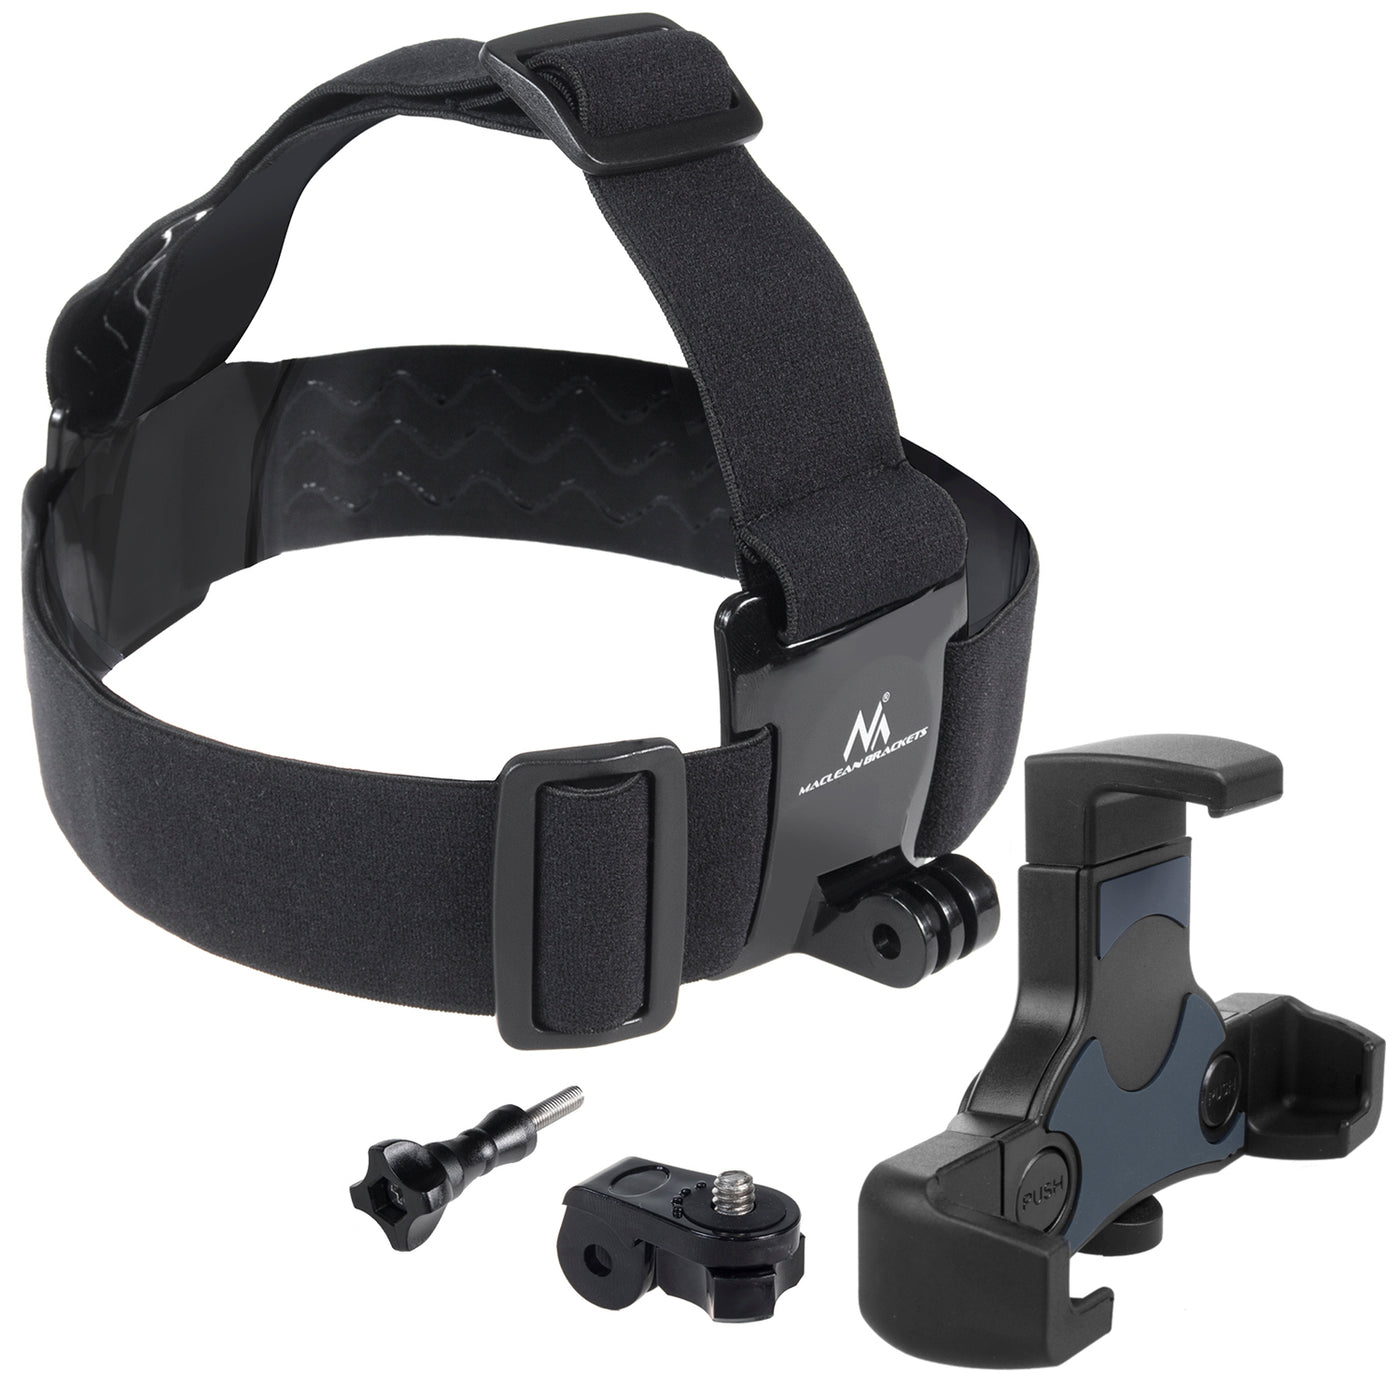 Sportowa opaska na głowę Maclean, obrotowa, do telefonu, aparatu, kamer GoPro i innych, uniwersalna, MC-448